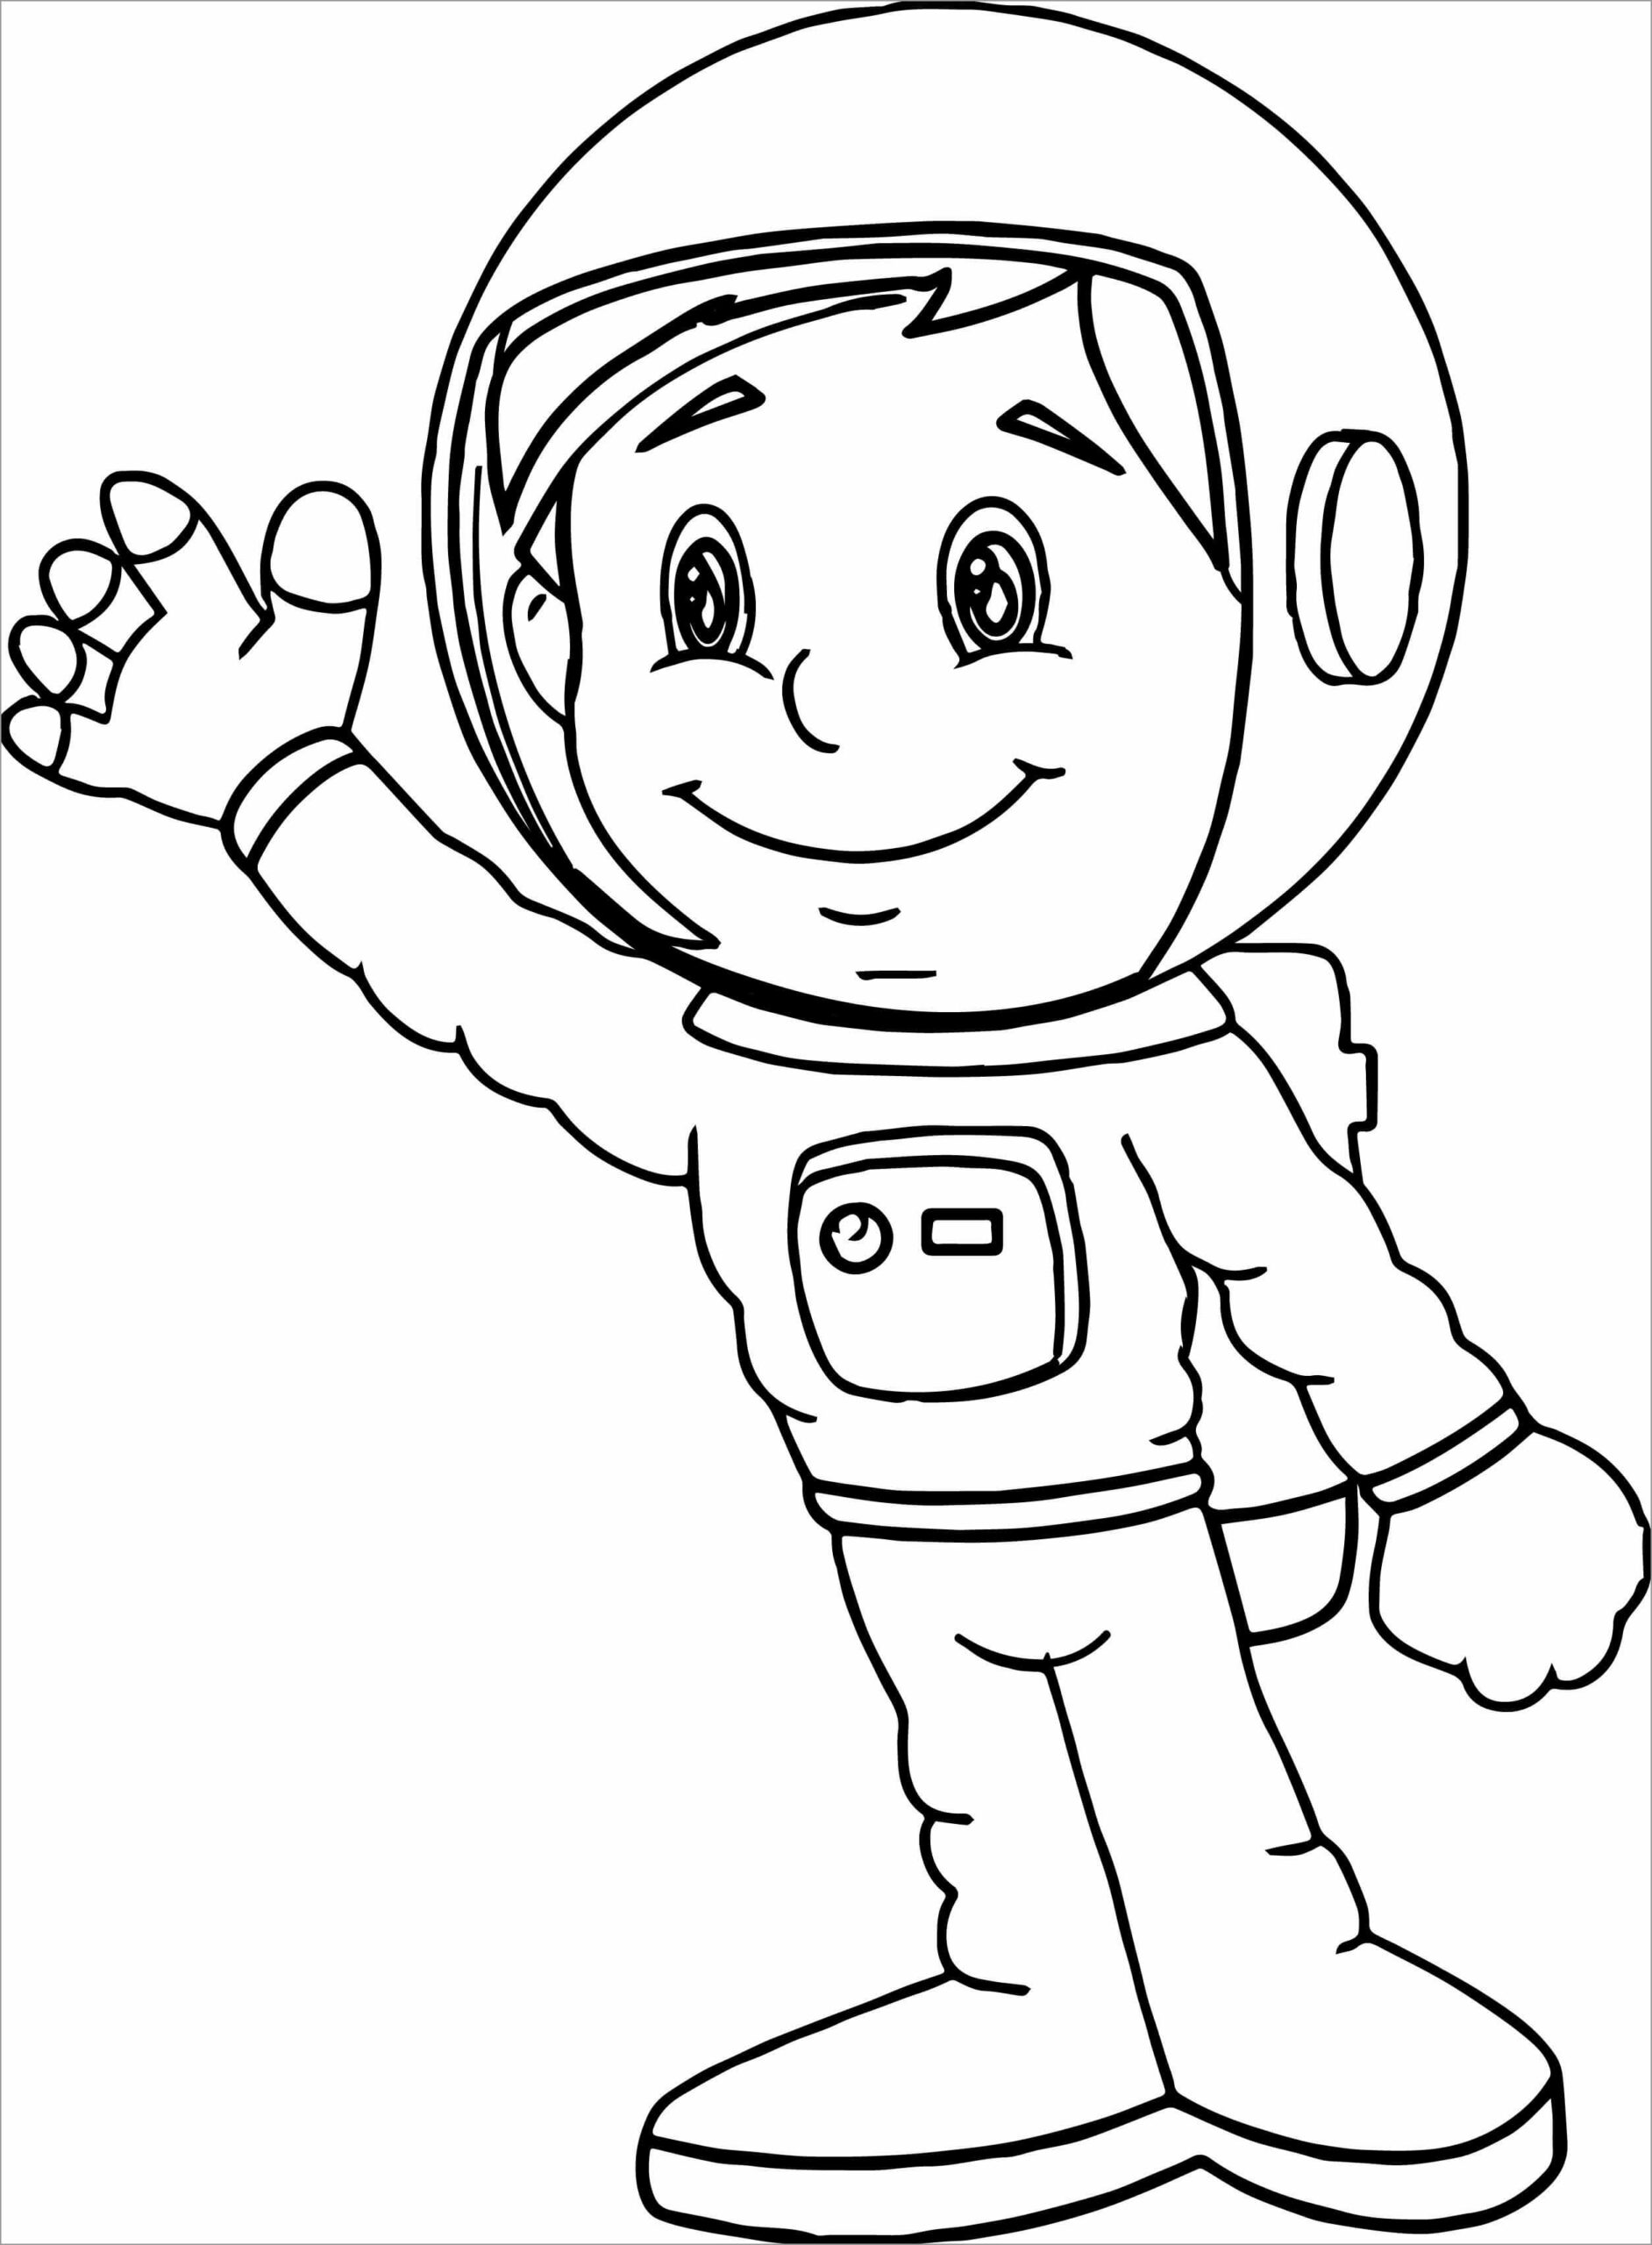 Dibujos de Niño Astronauta Sonriente para colorear